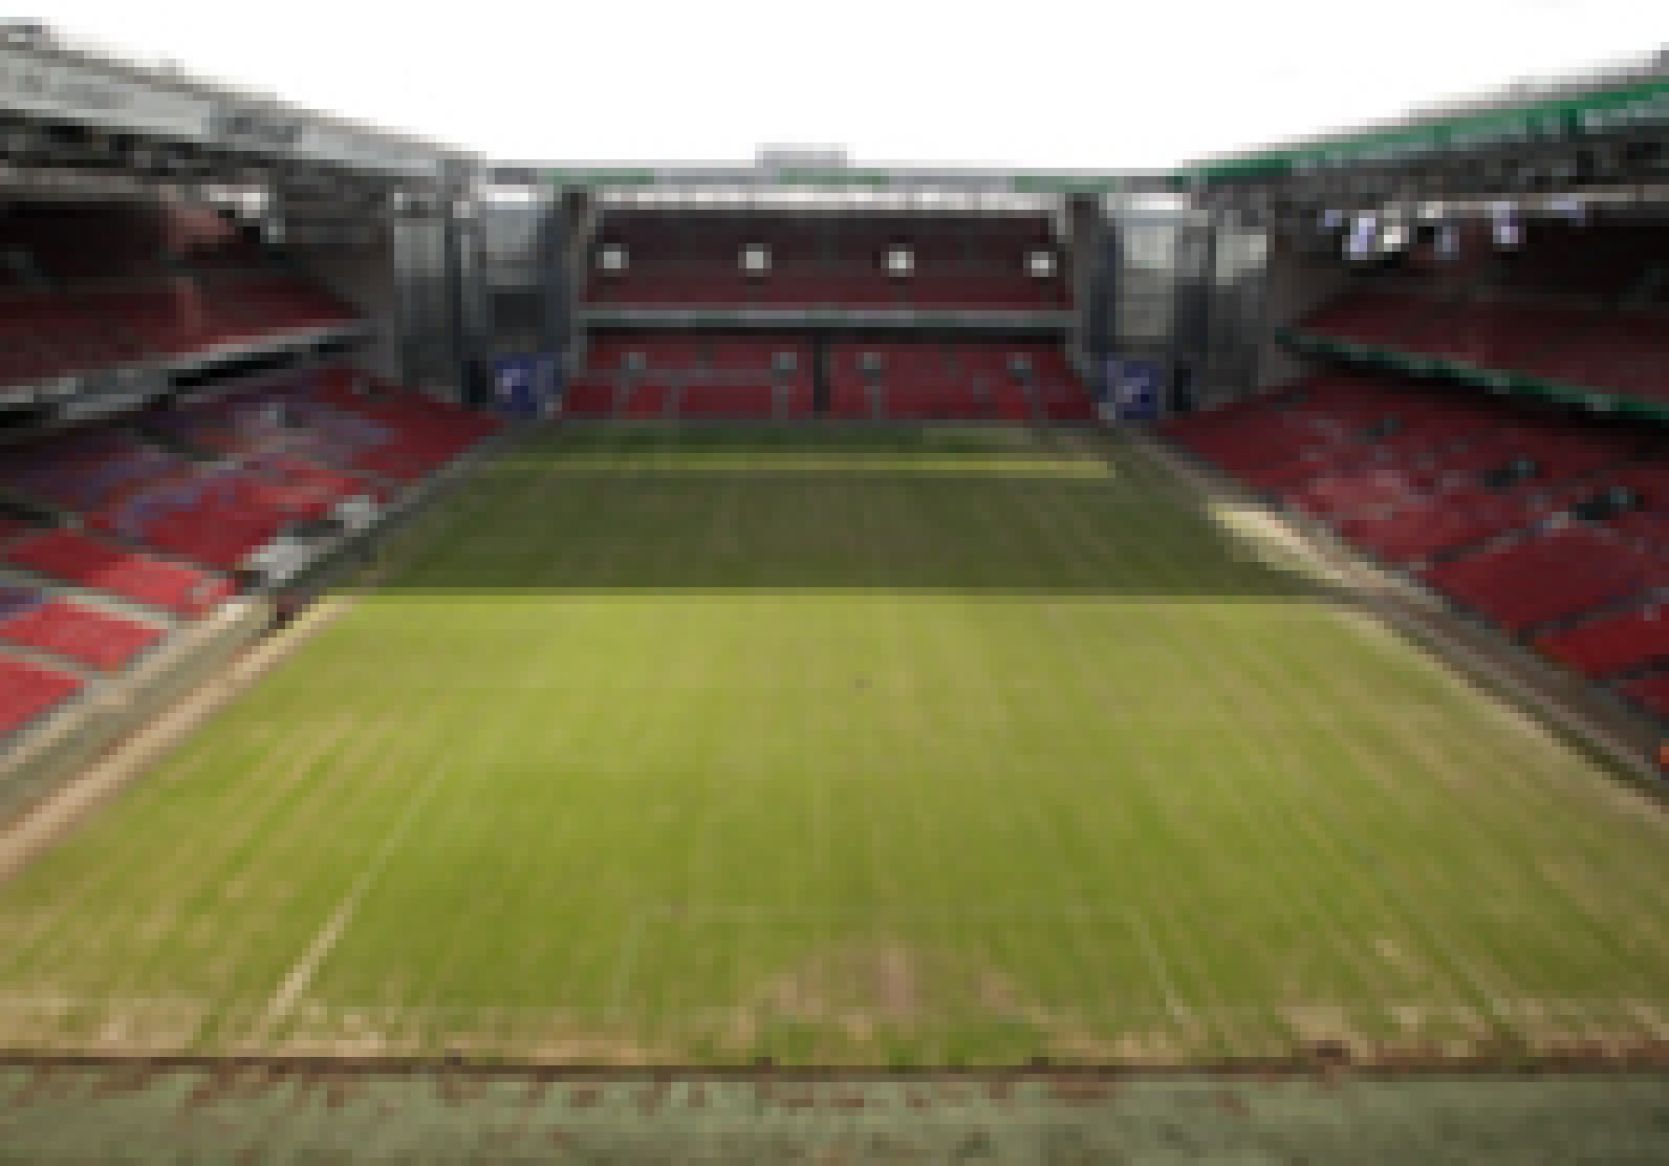 Nyt græs i PARKEN til søndagens Superligakamp